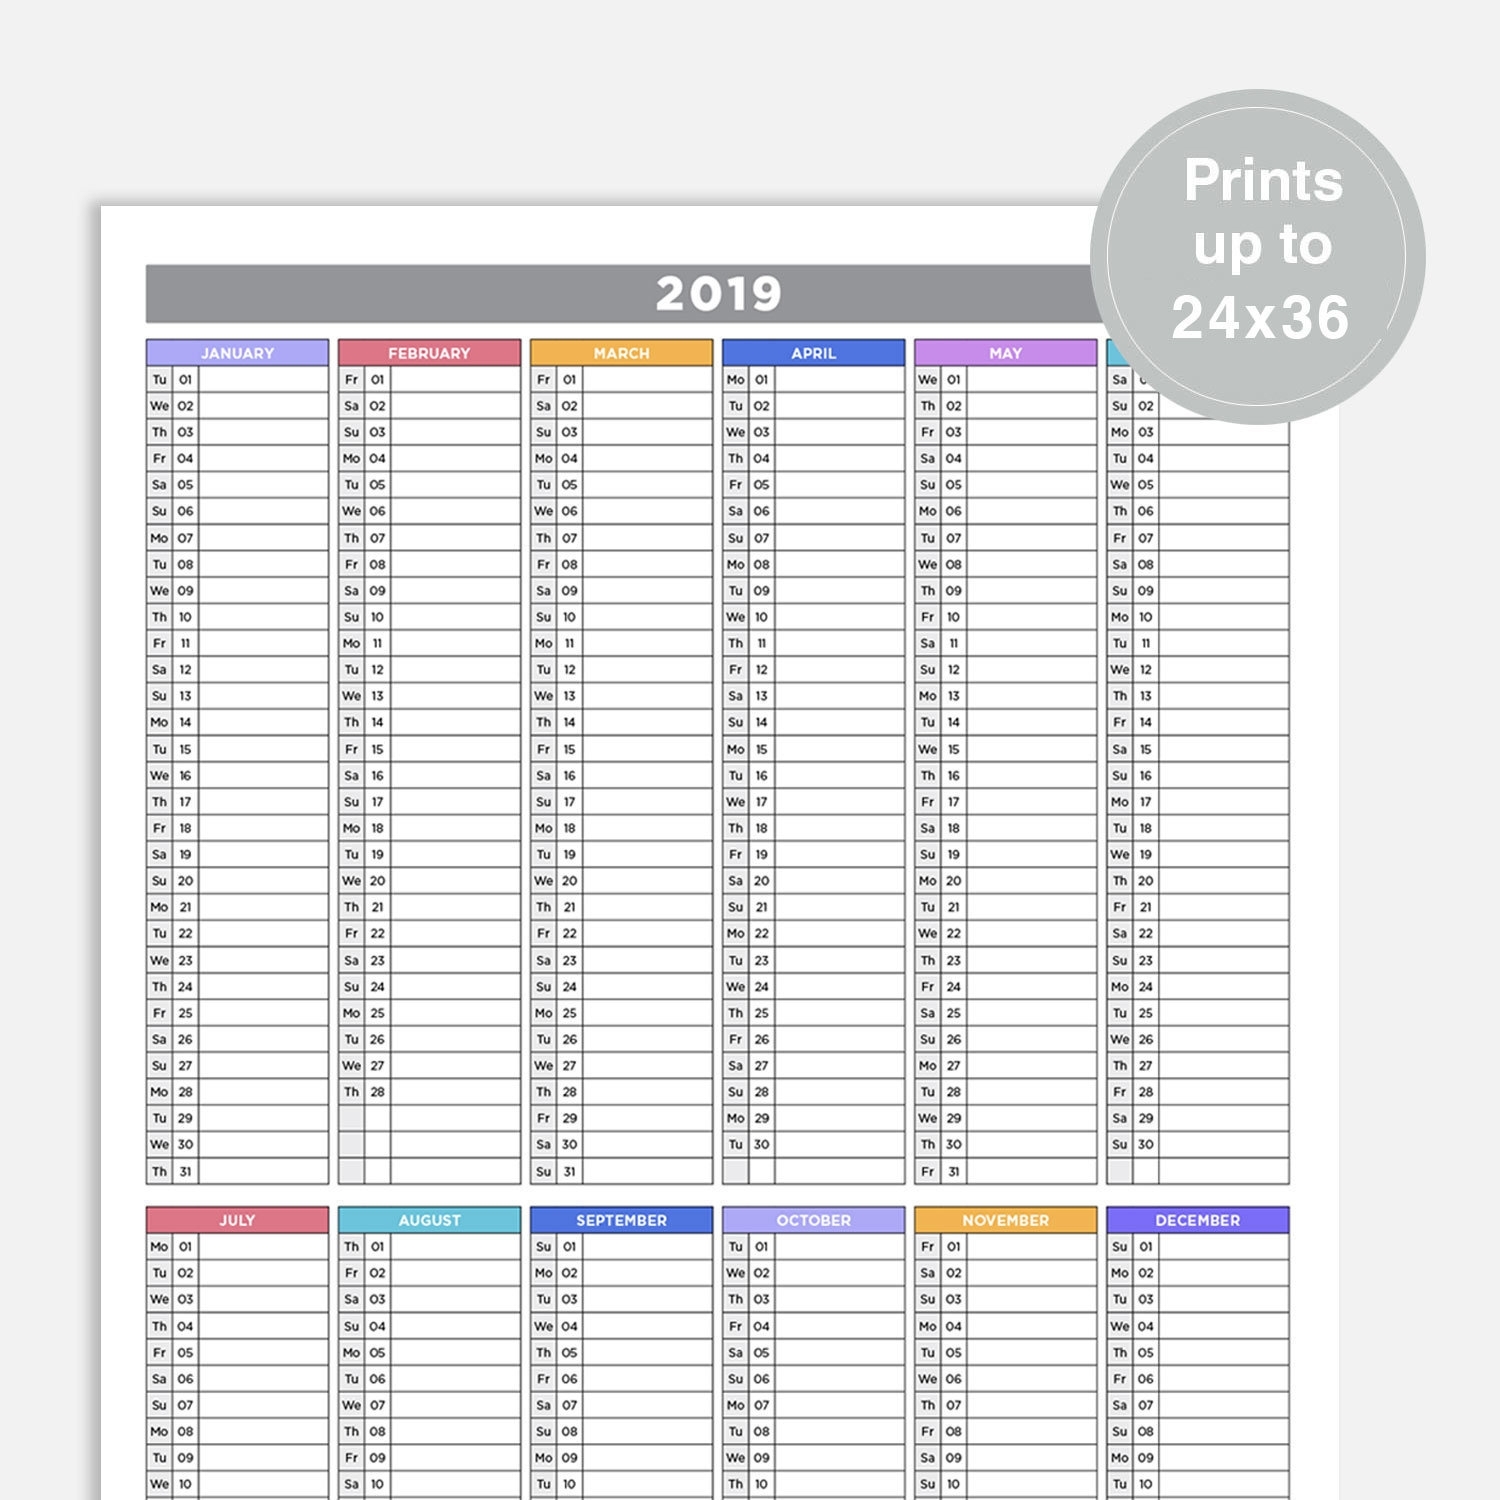 2019 Calendar Wall Calendar 2019 Year Calendar At A Glance | Etsy with regard to Year Calendar At A Glance